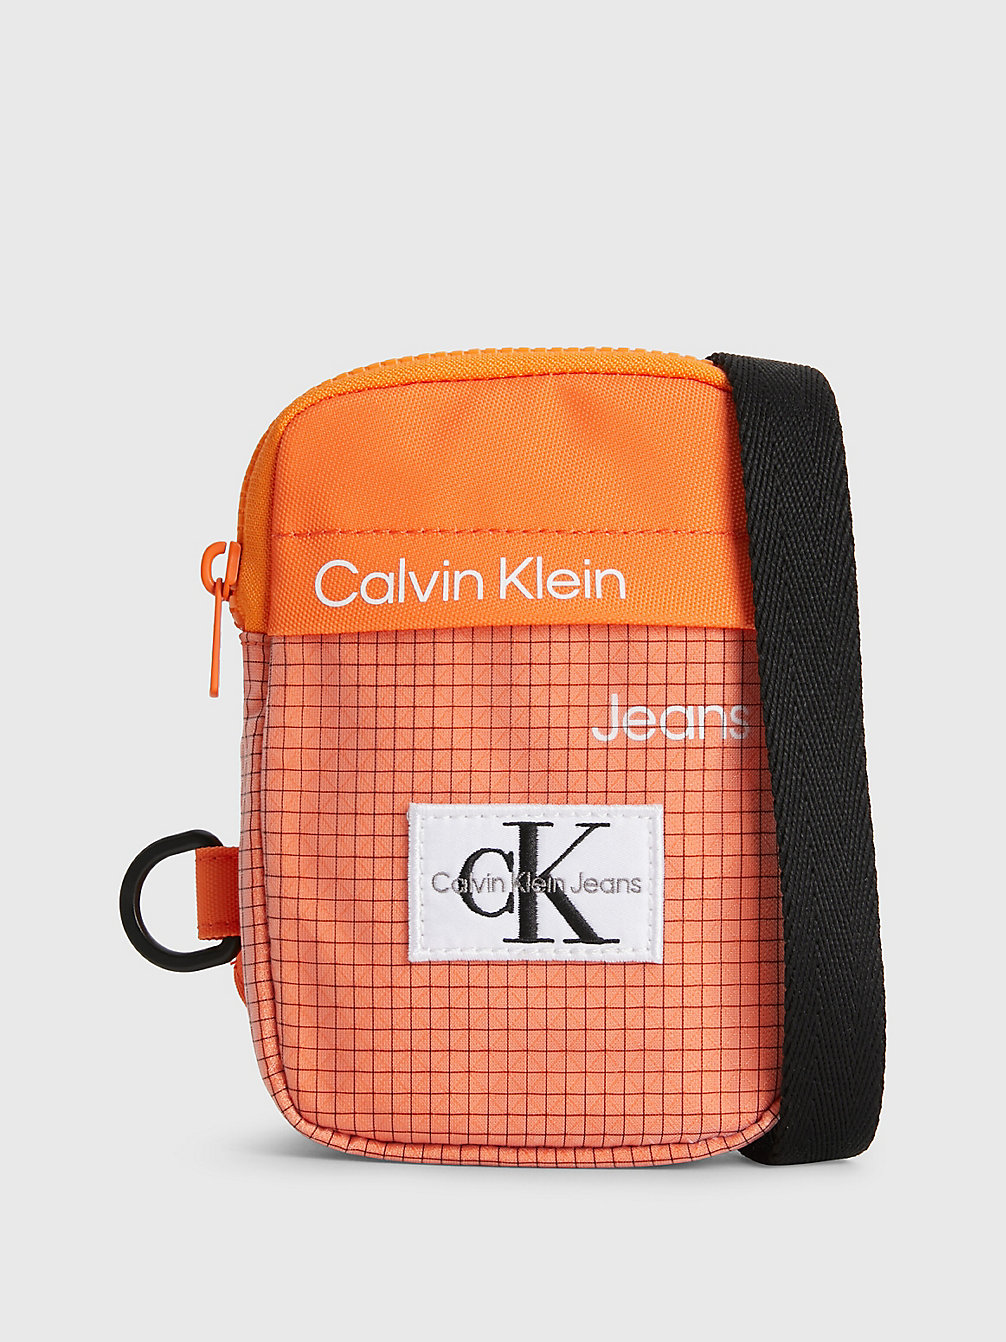 VIBRANT ORANGE > Crossover-Bag Für Kids Mit Logo > undefined kids unisex - Calvin Klein